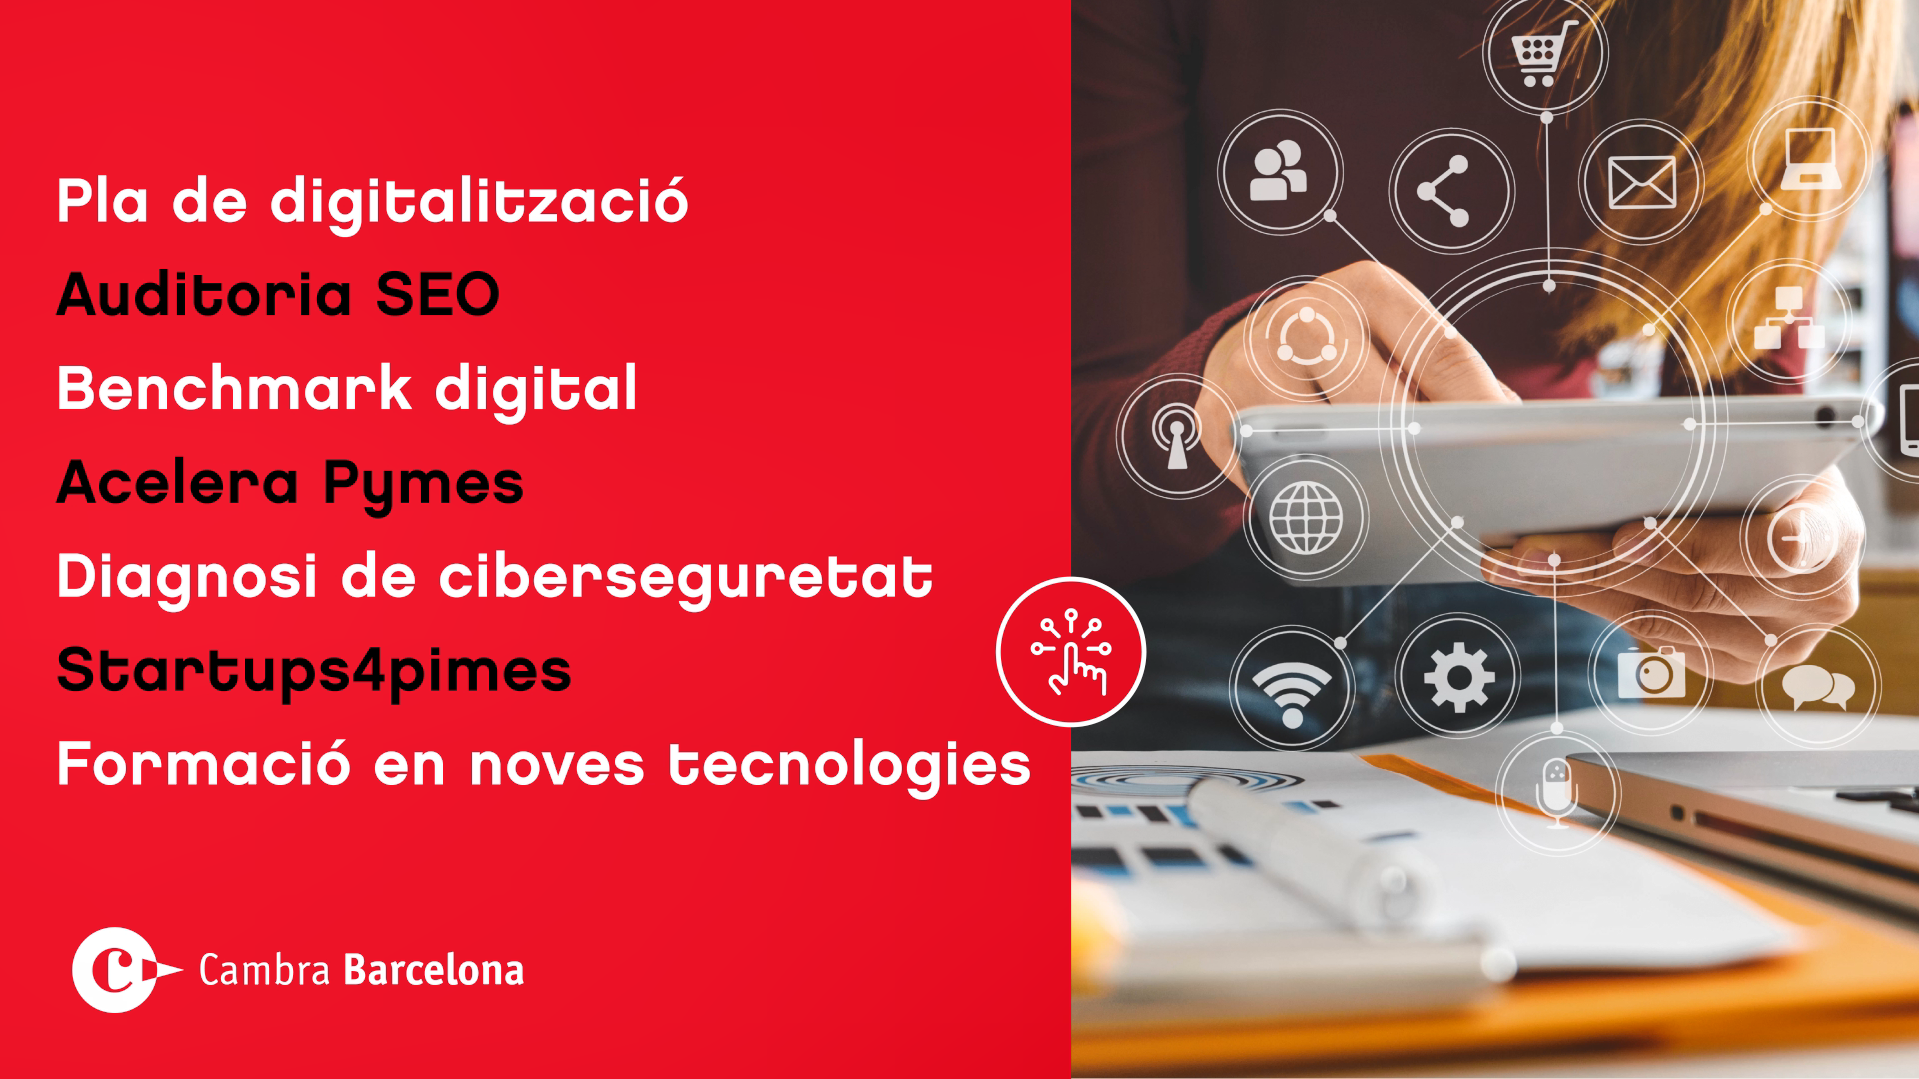 La Cambra de Barcelona engega una campanya per potenciar la digitalització de les empreses